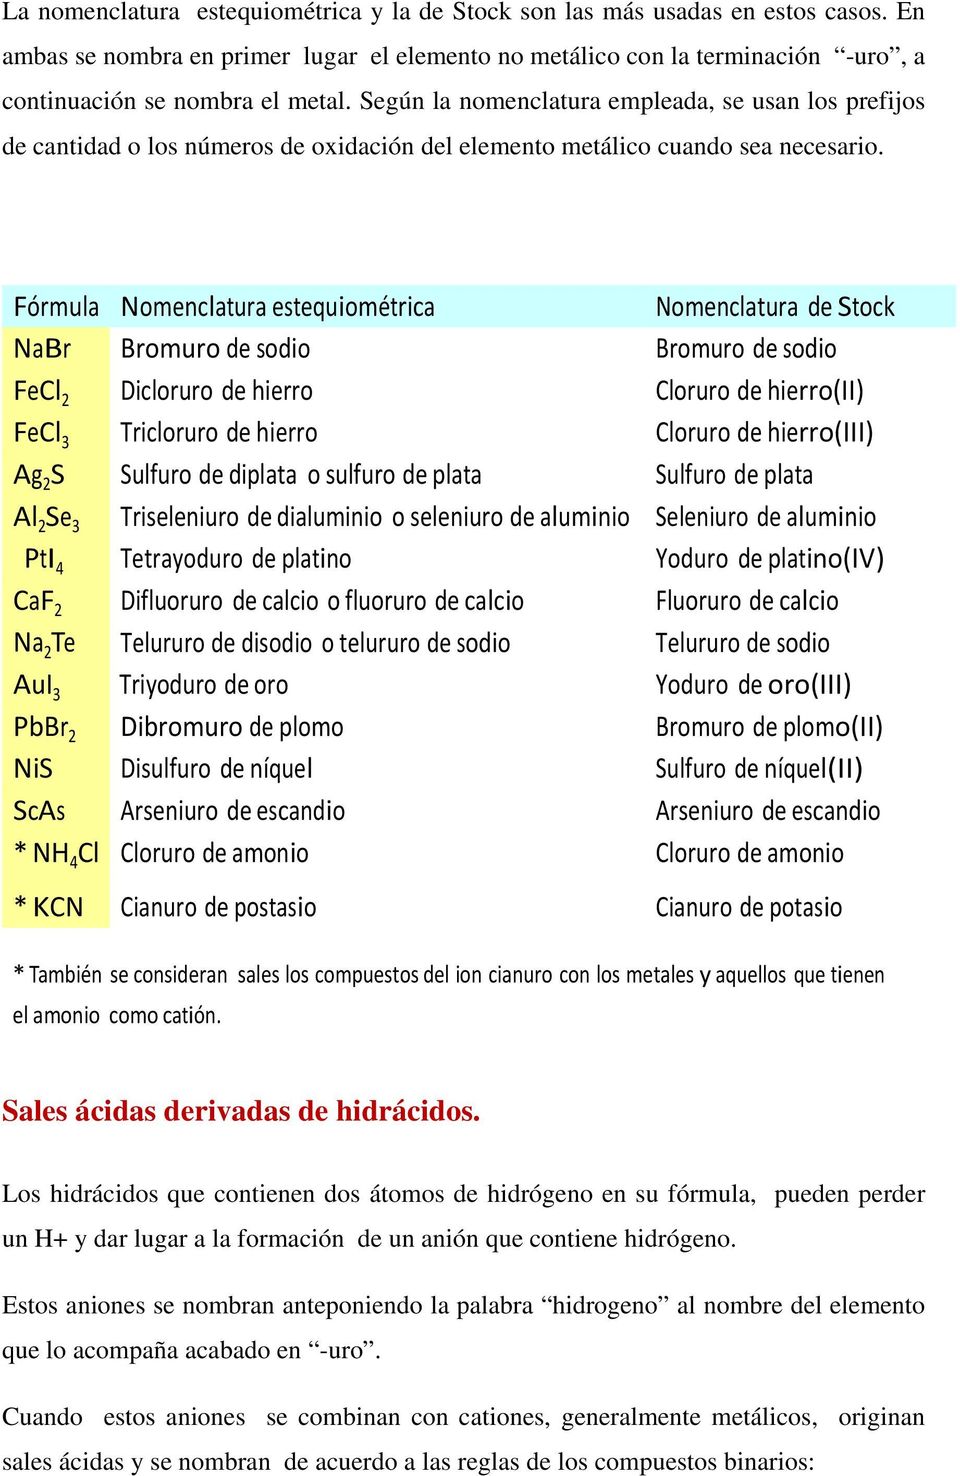 Fórmula Nomenclatura estequiométrica Nomenclatura de Stock NaBr Bromuro de sodio Bromuro de sodio FeCl Dicloruro de hierro Cloruro de hierro(ii) FeCl Tricloruro de hierro Cloruro de hierro(iii) Ag S